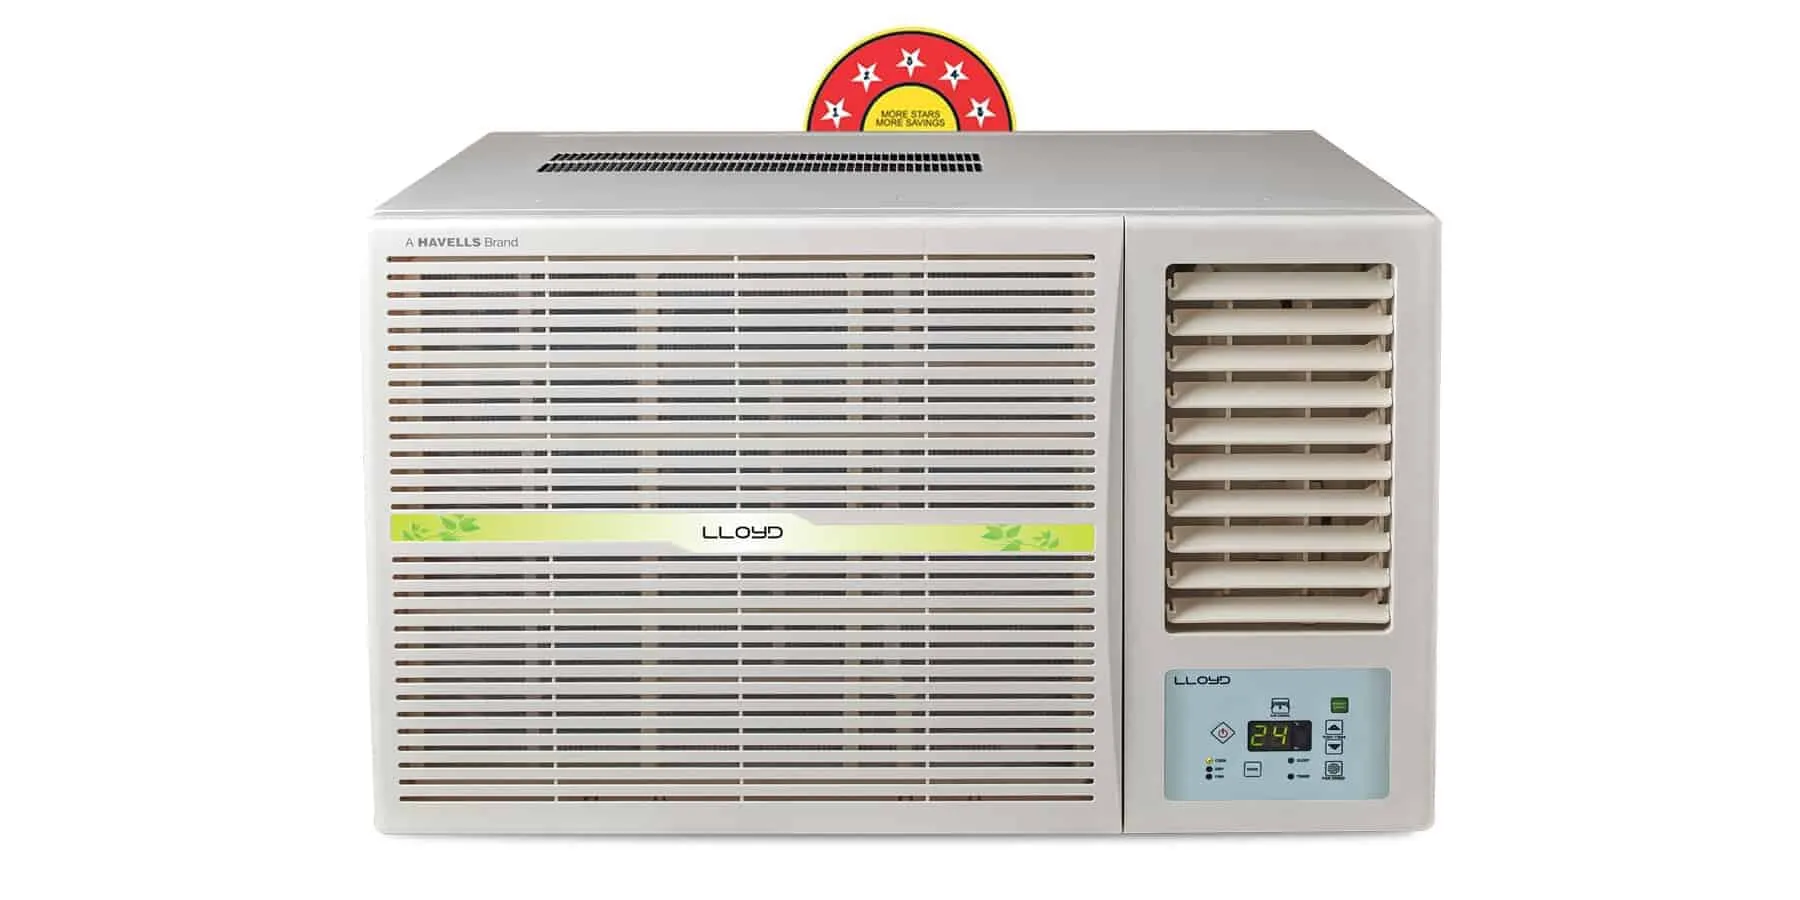 lloyd 5 star air conditioner